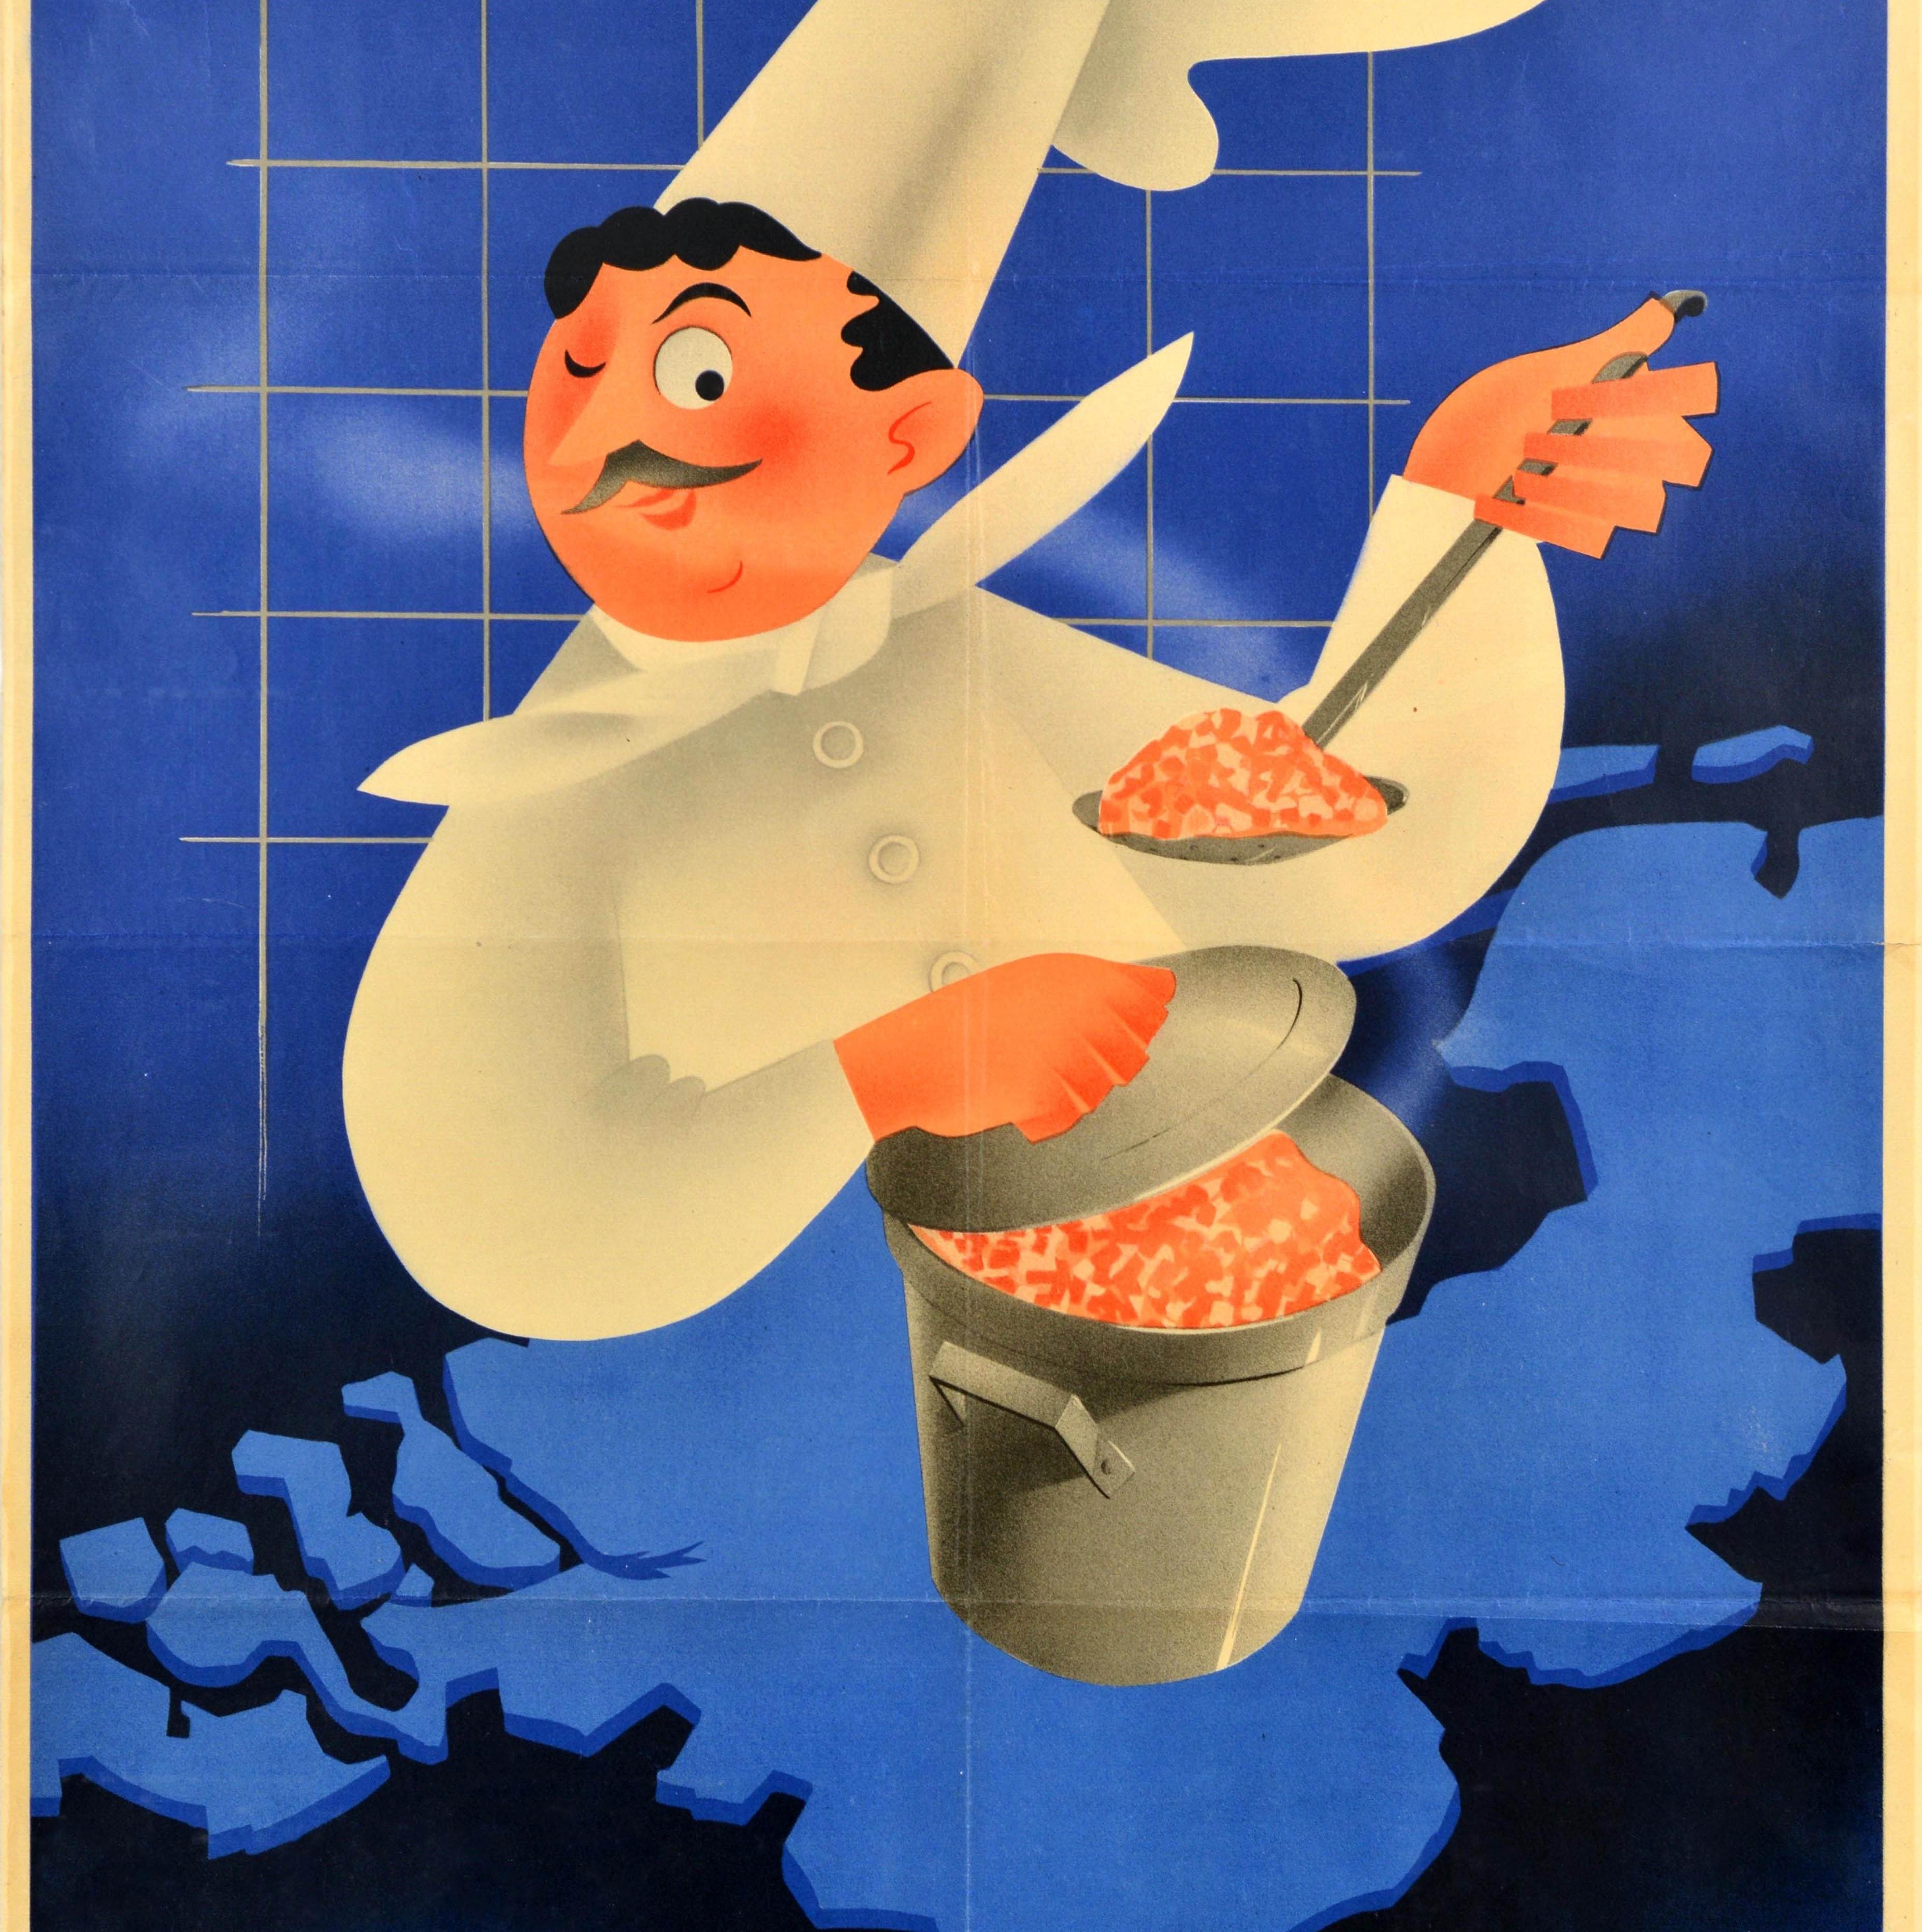 Original Vintage World War Two Food Propaganda Poster - Central Kitchens A nutritious meal for little money / Centrale Keukens Voor weinig geld een voedzaam maal - mit einer lustigen Illustration eines lächelnden Kochs, der dem Betrachter zuzwinkert